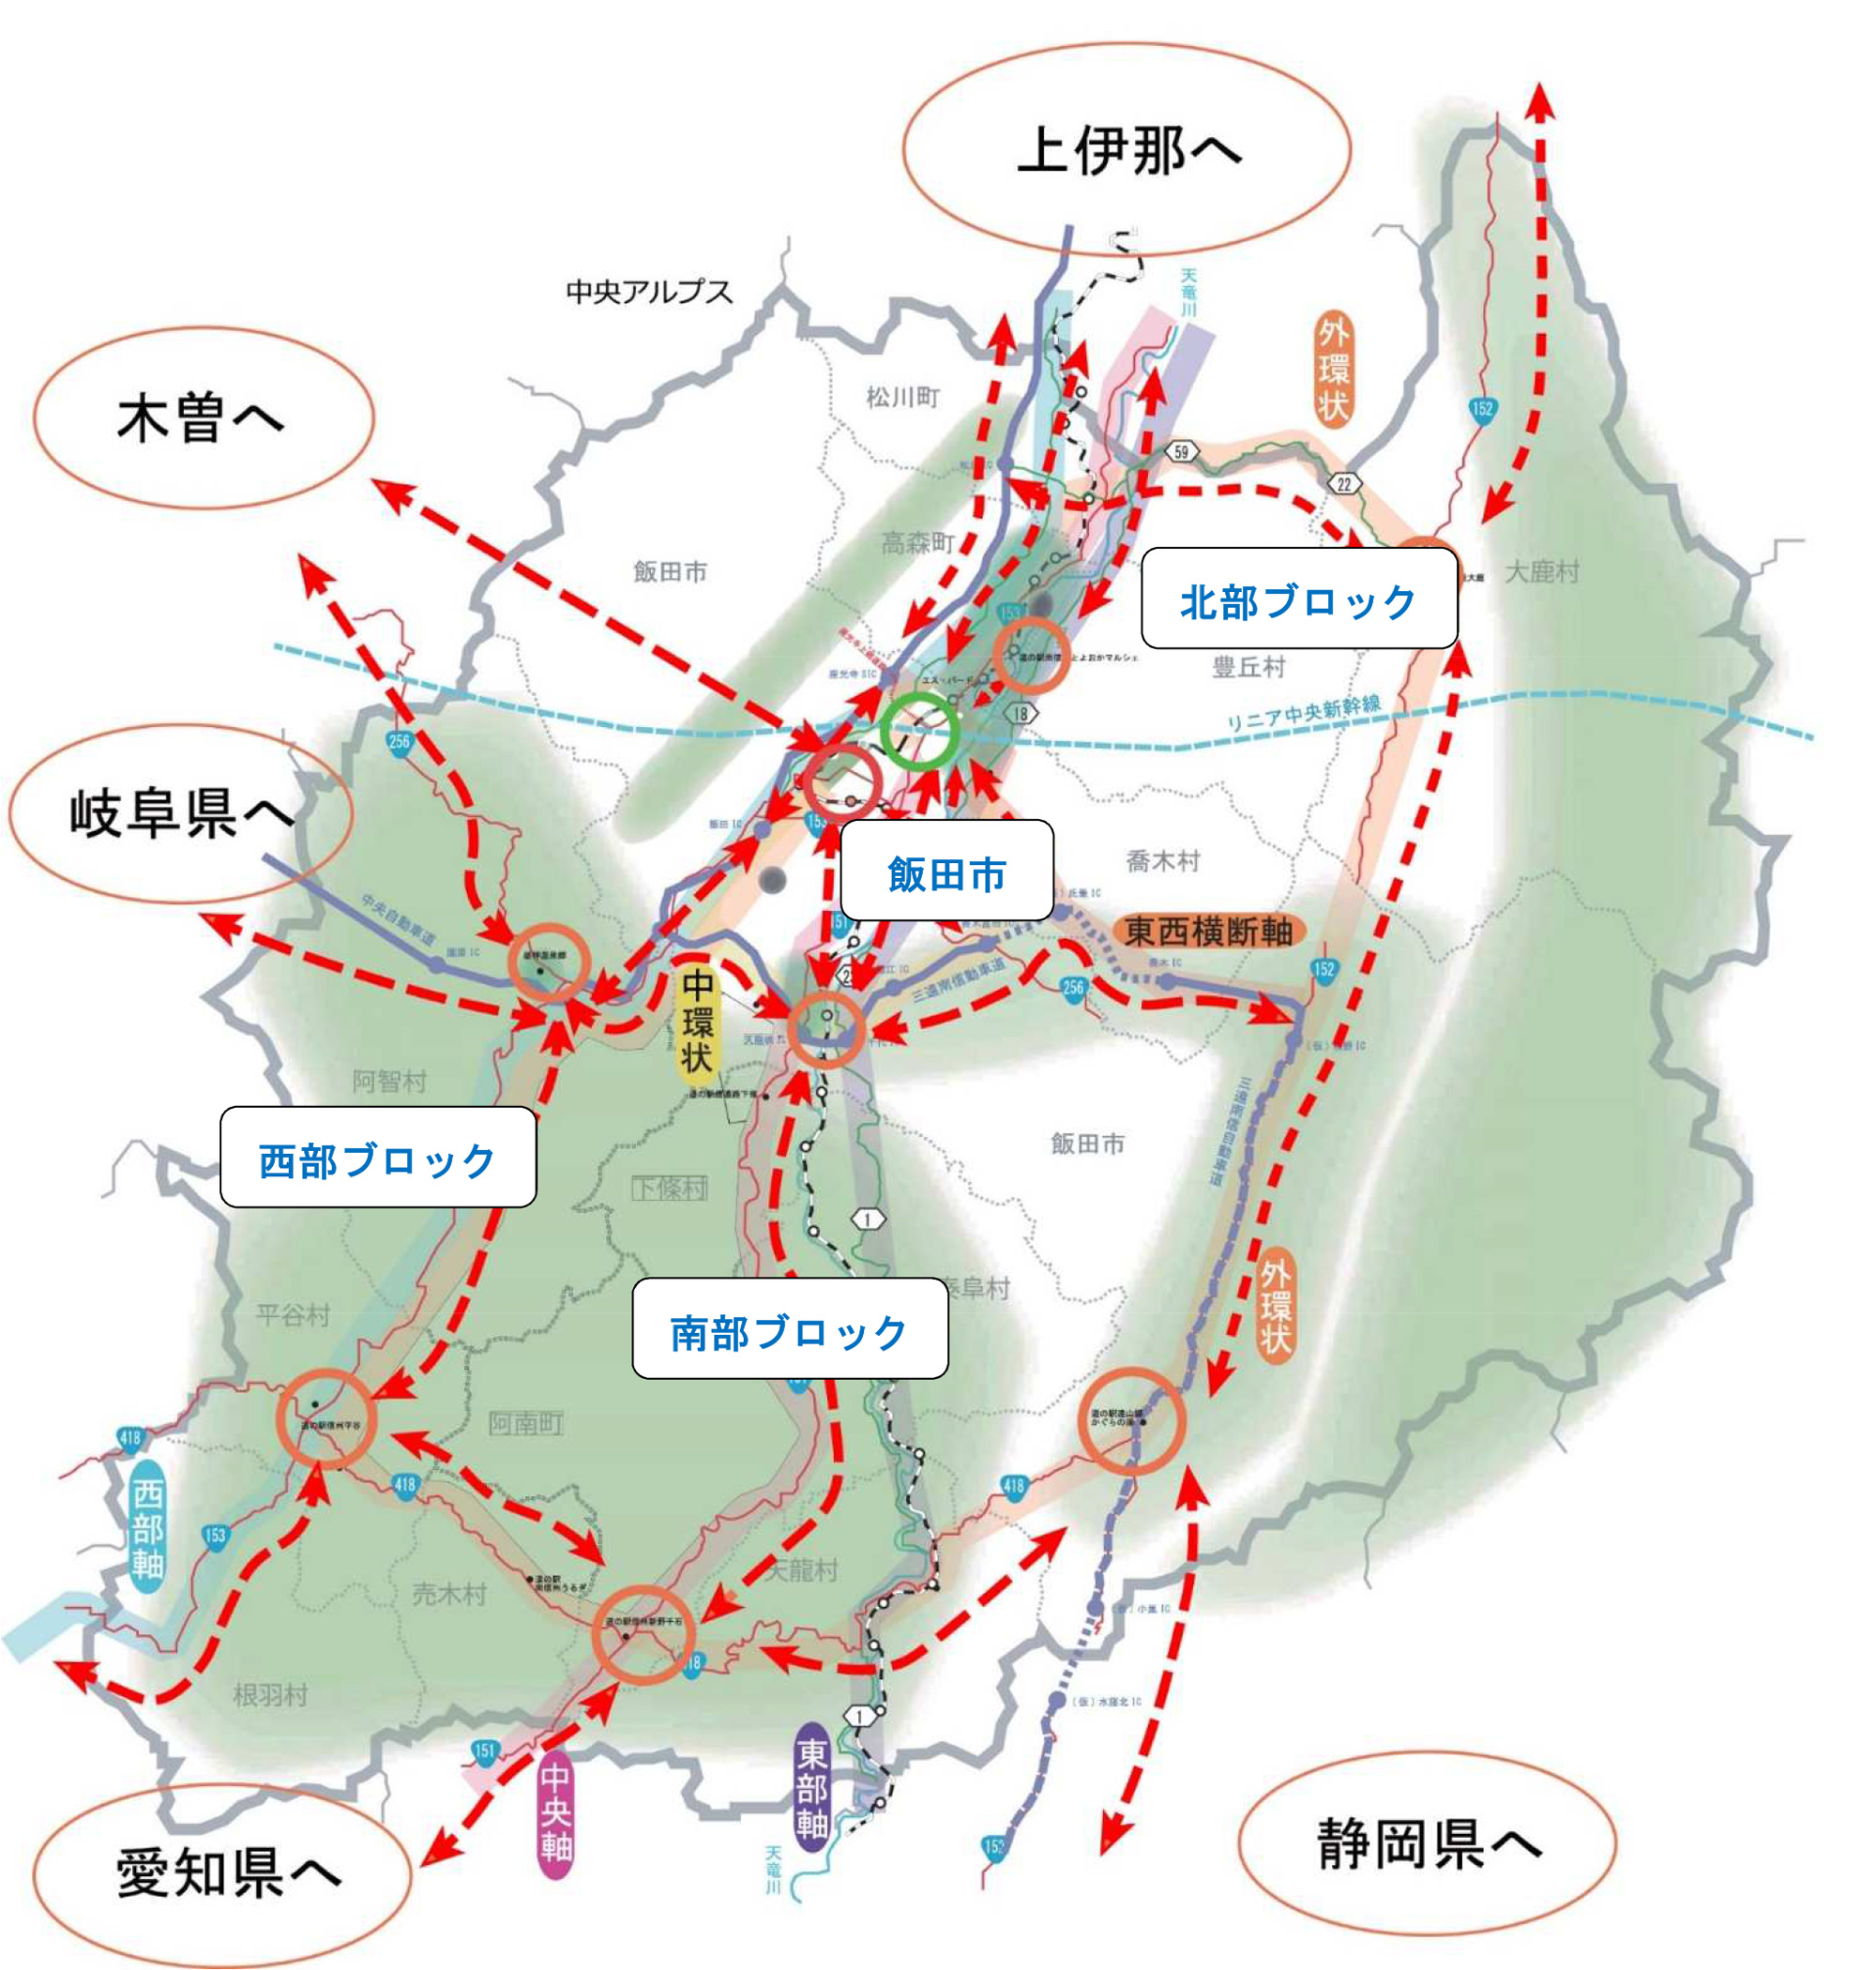 リニア中央新幹線、三遠南信自動車道開通後の地域間交流のイメージ